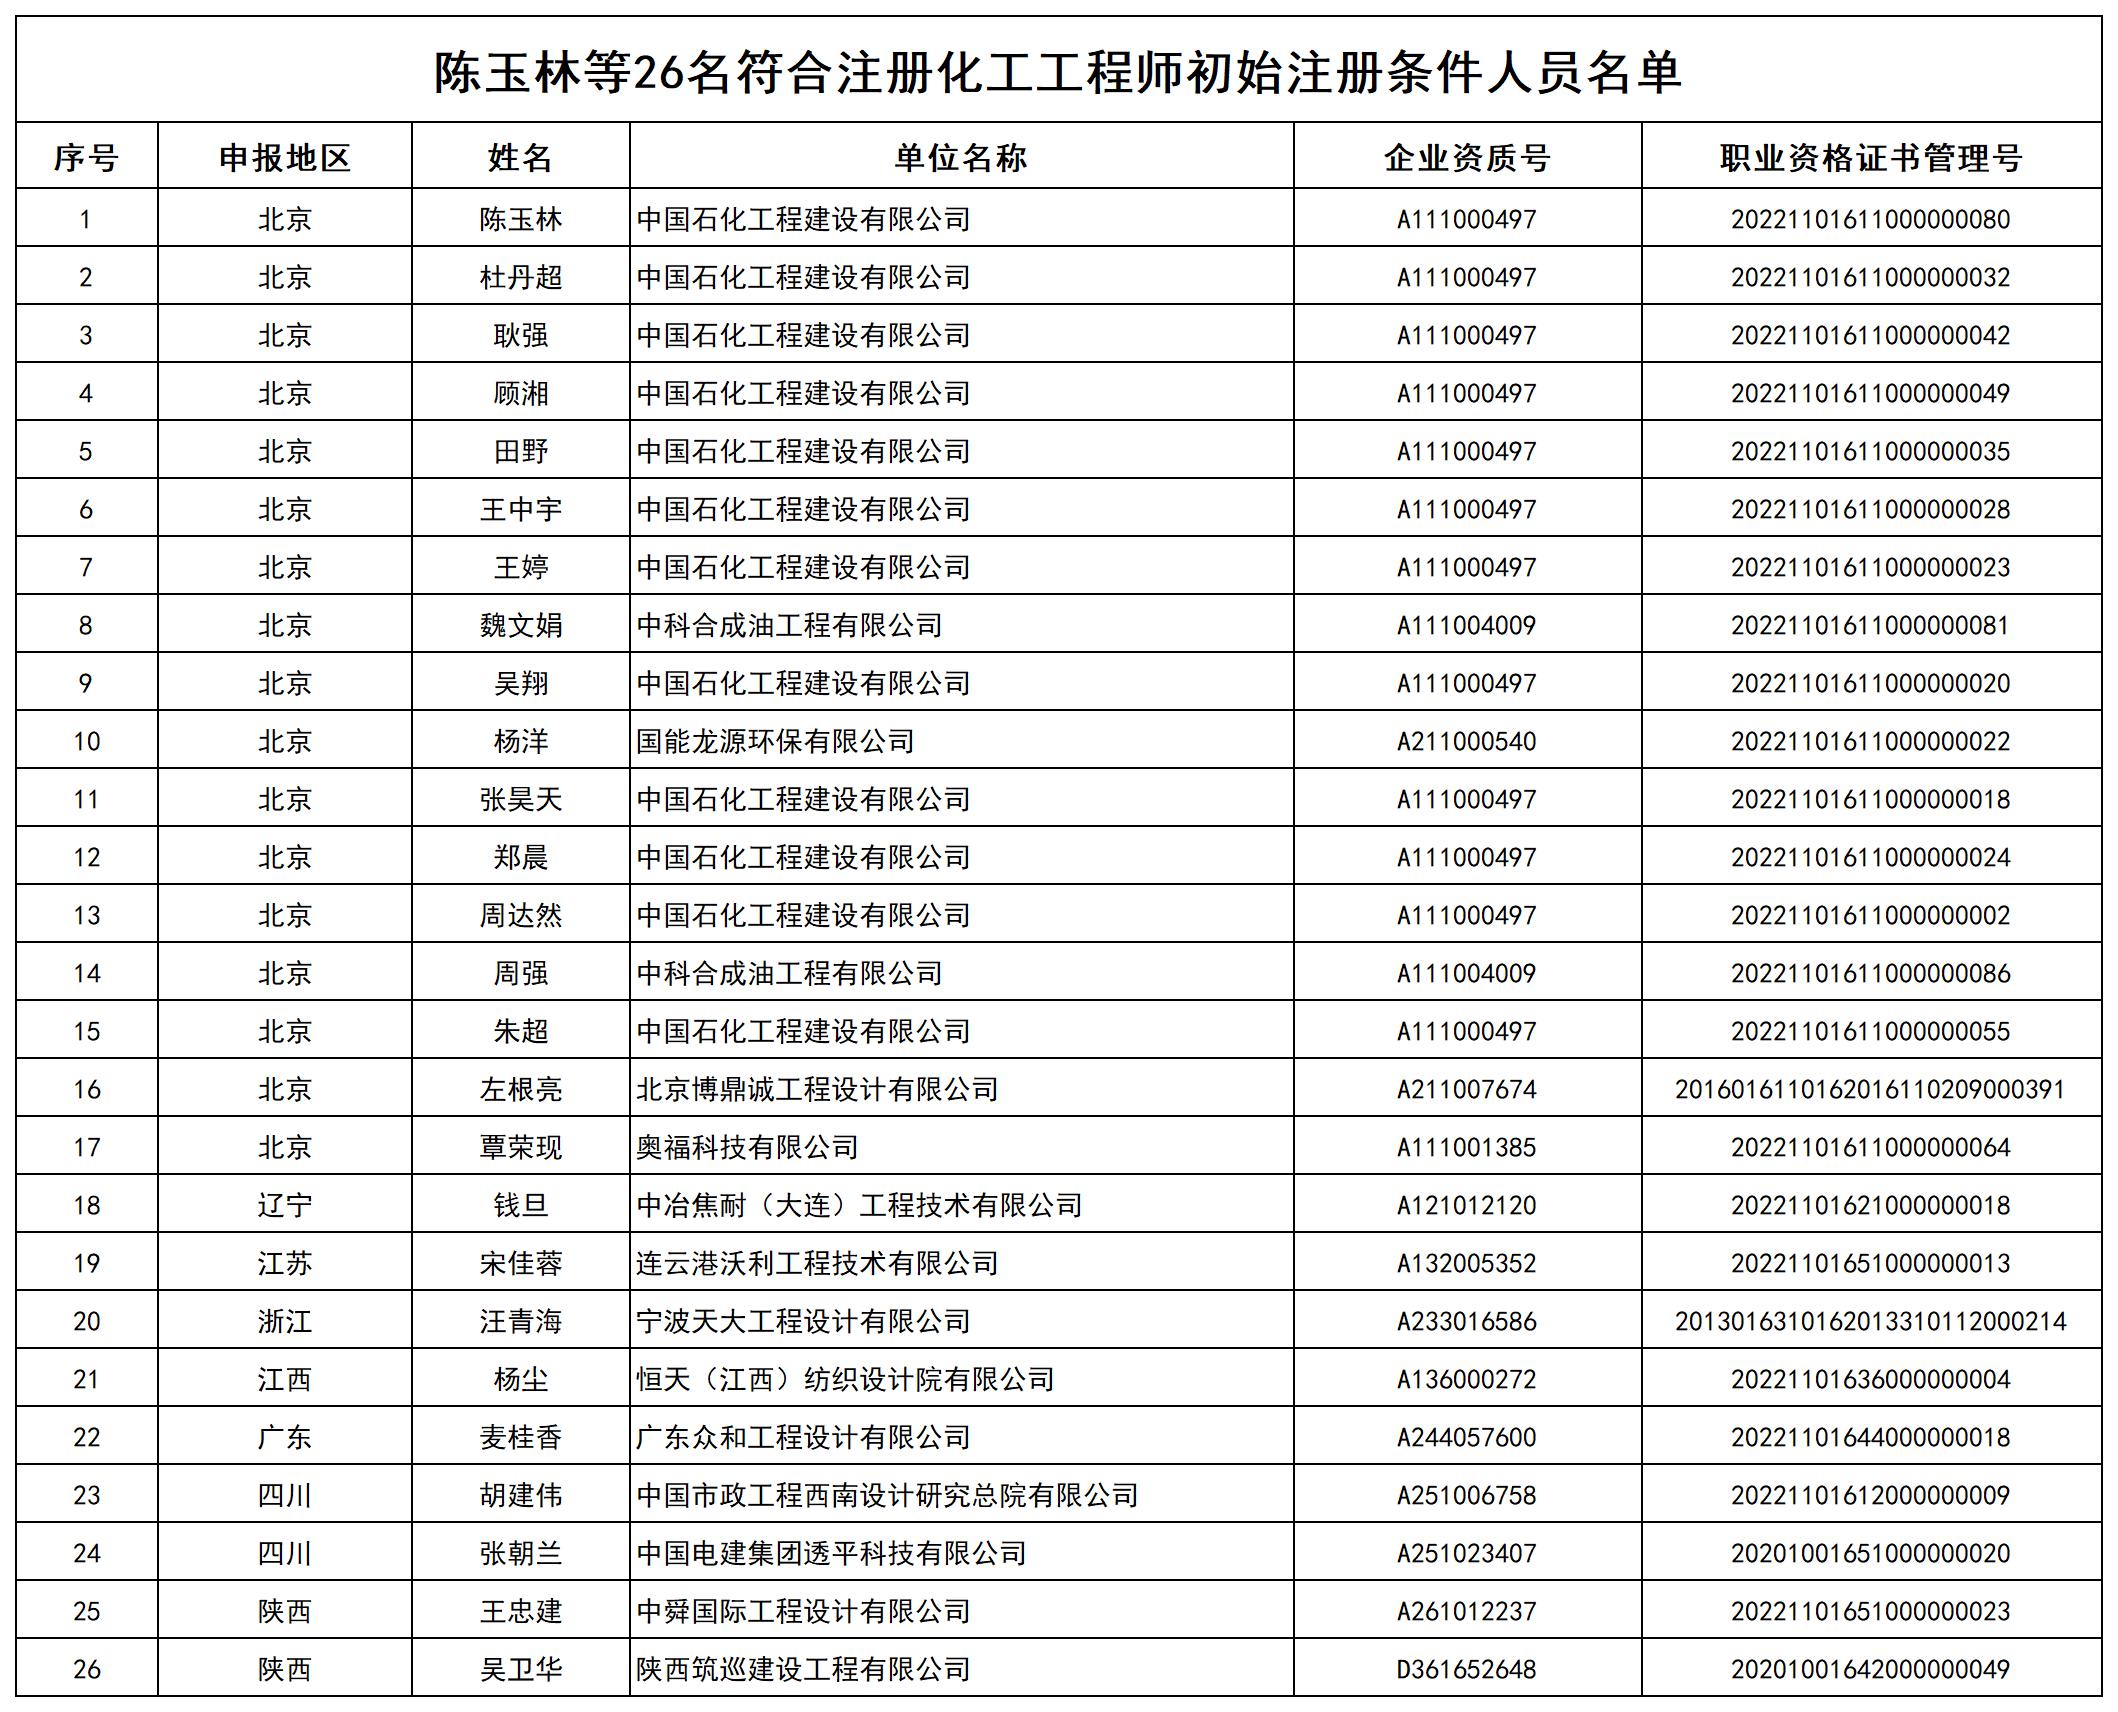 陈玉林等26名符合注册化工工程师初始注册条件人员名单_打印结果.jpg